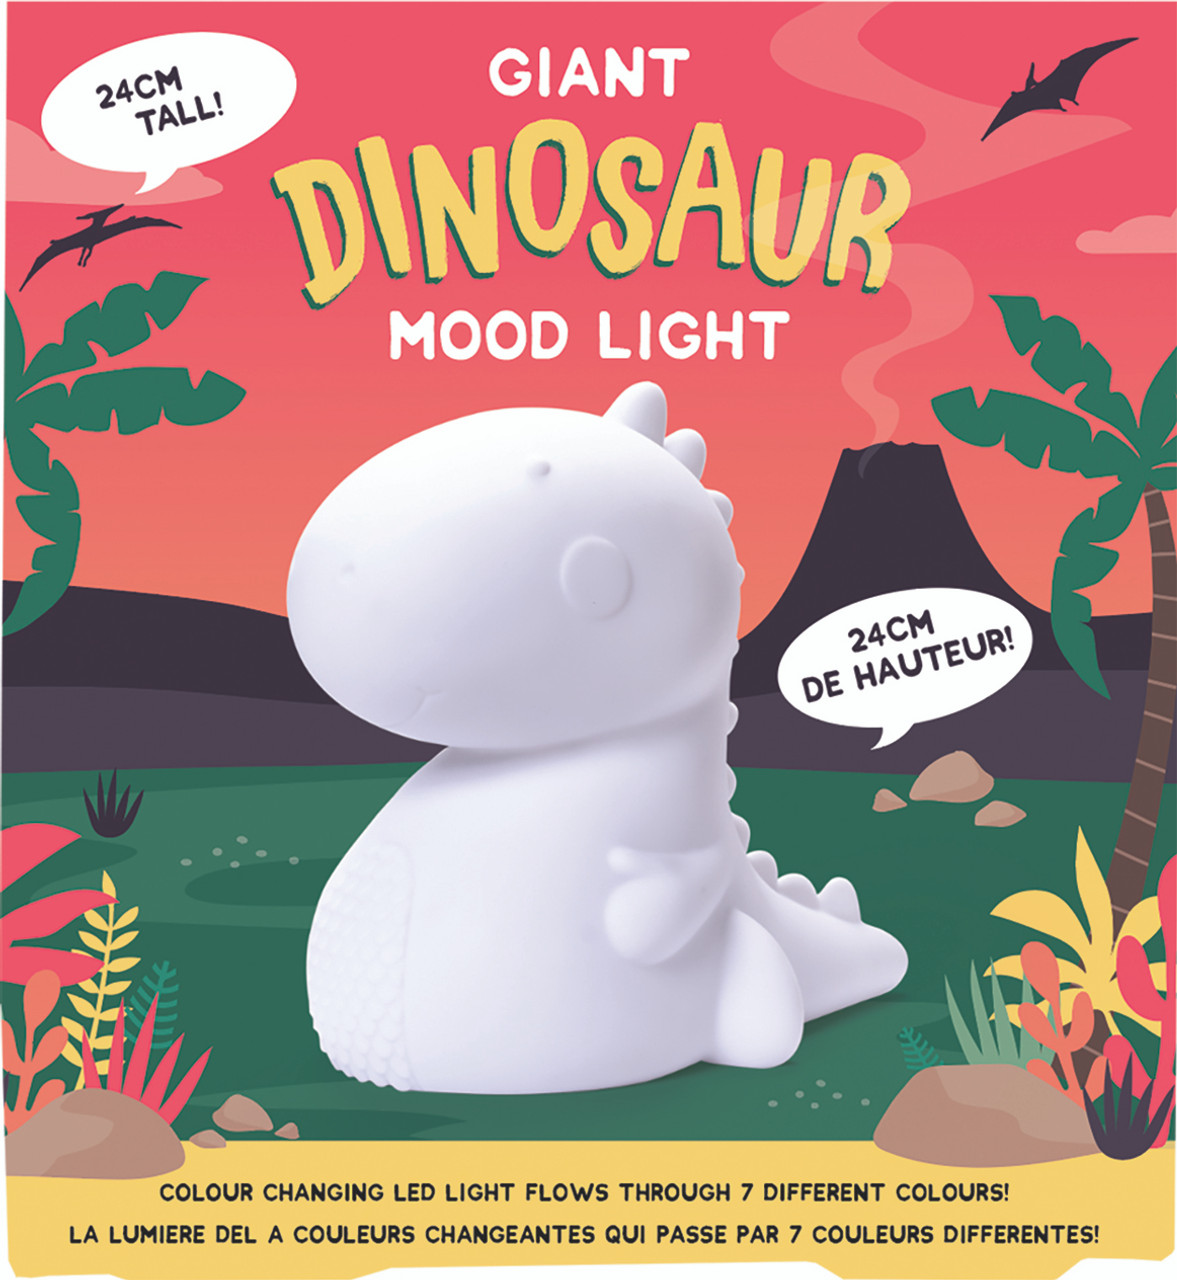 Giant Dinosaur Mood Light 2